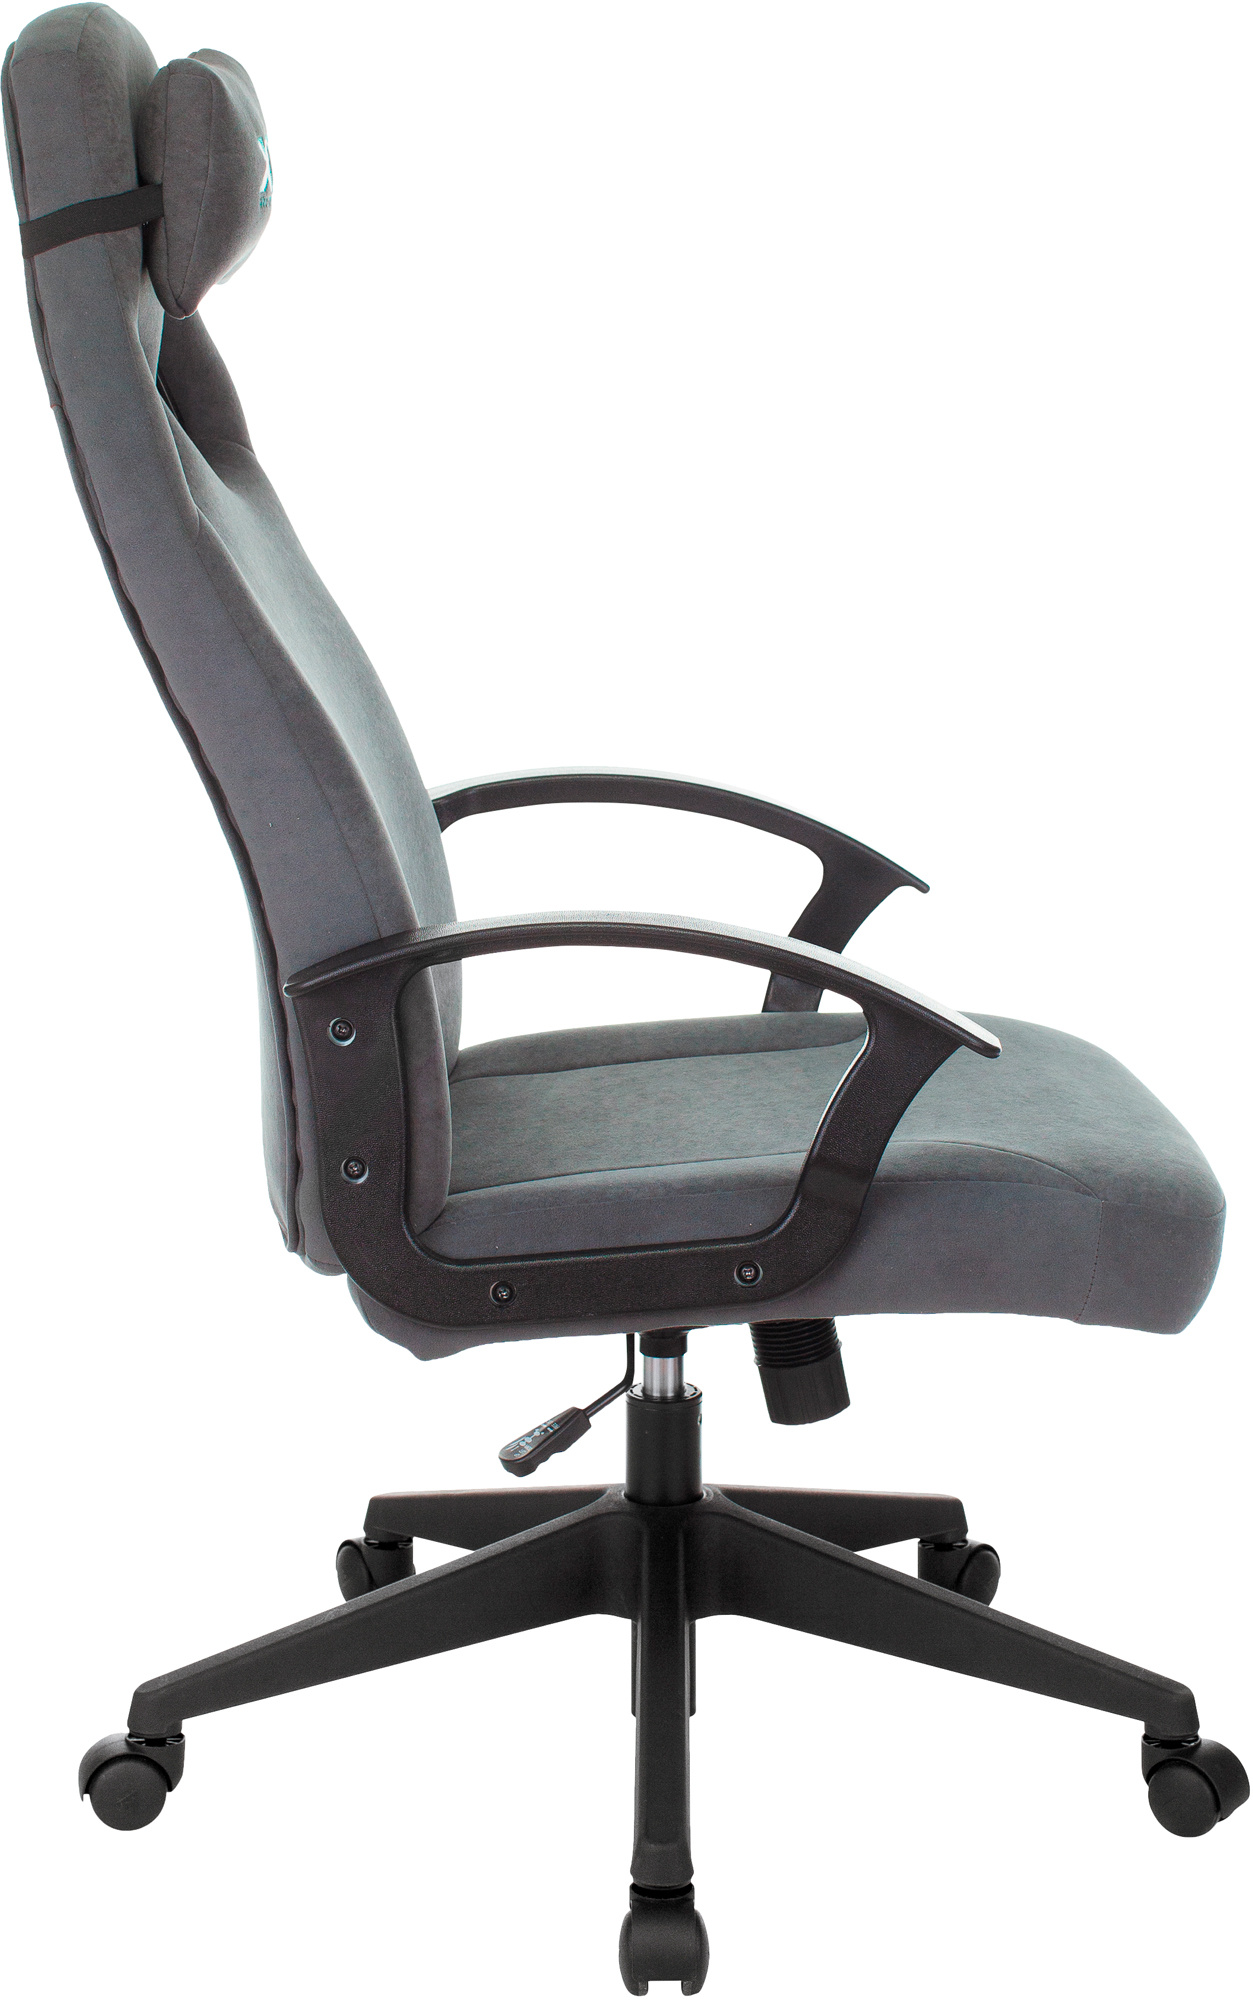 Кресло игровое A4Tech X7 GG-1300 серый  